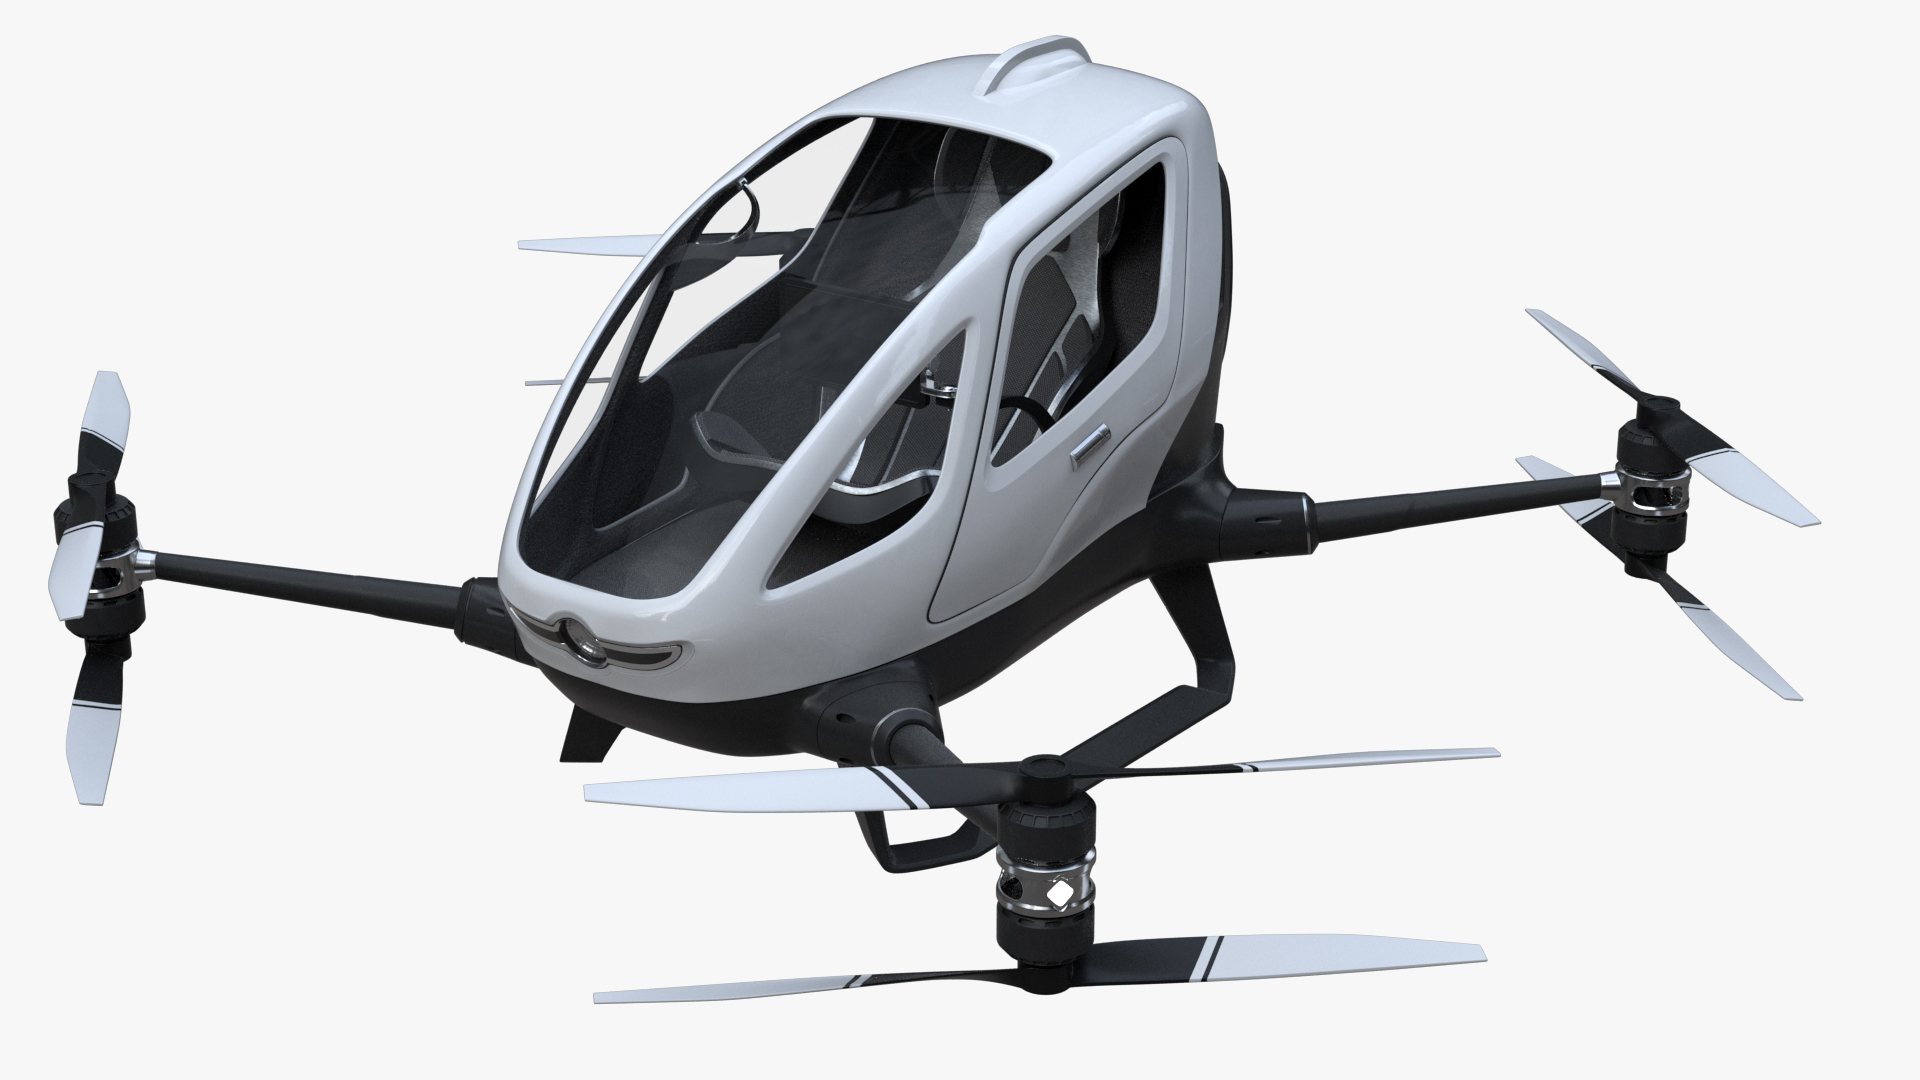 images/goods_img/2021040162/eHang Unbranded Single Passenger Aerial Drone 3D model/1.jpg